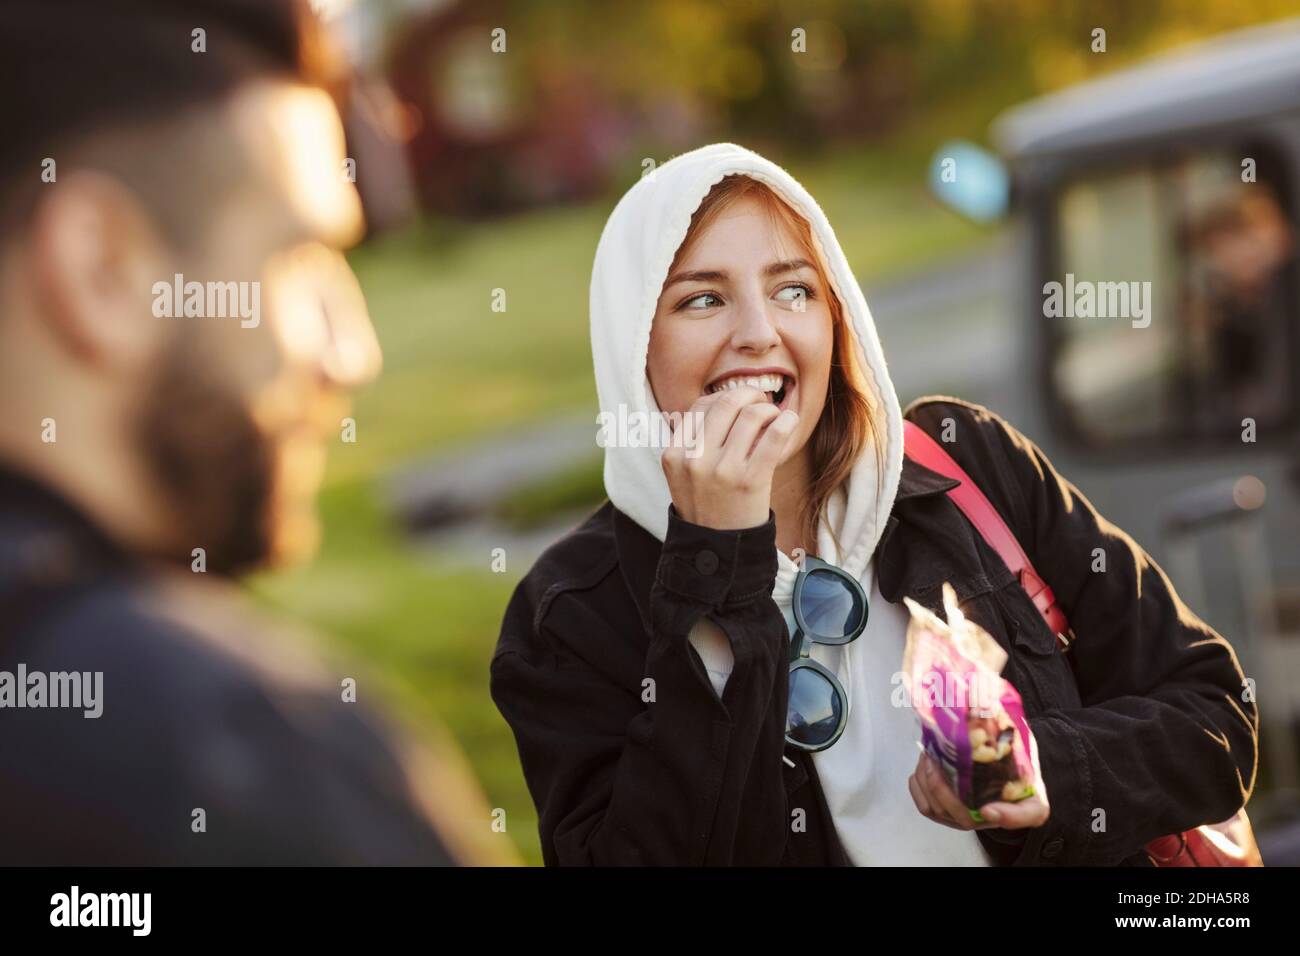 Fröhliche junge Frau, die vom Mann isst, während sie wegschaut Stockfoto